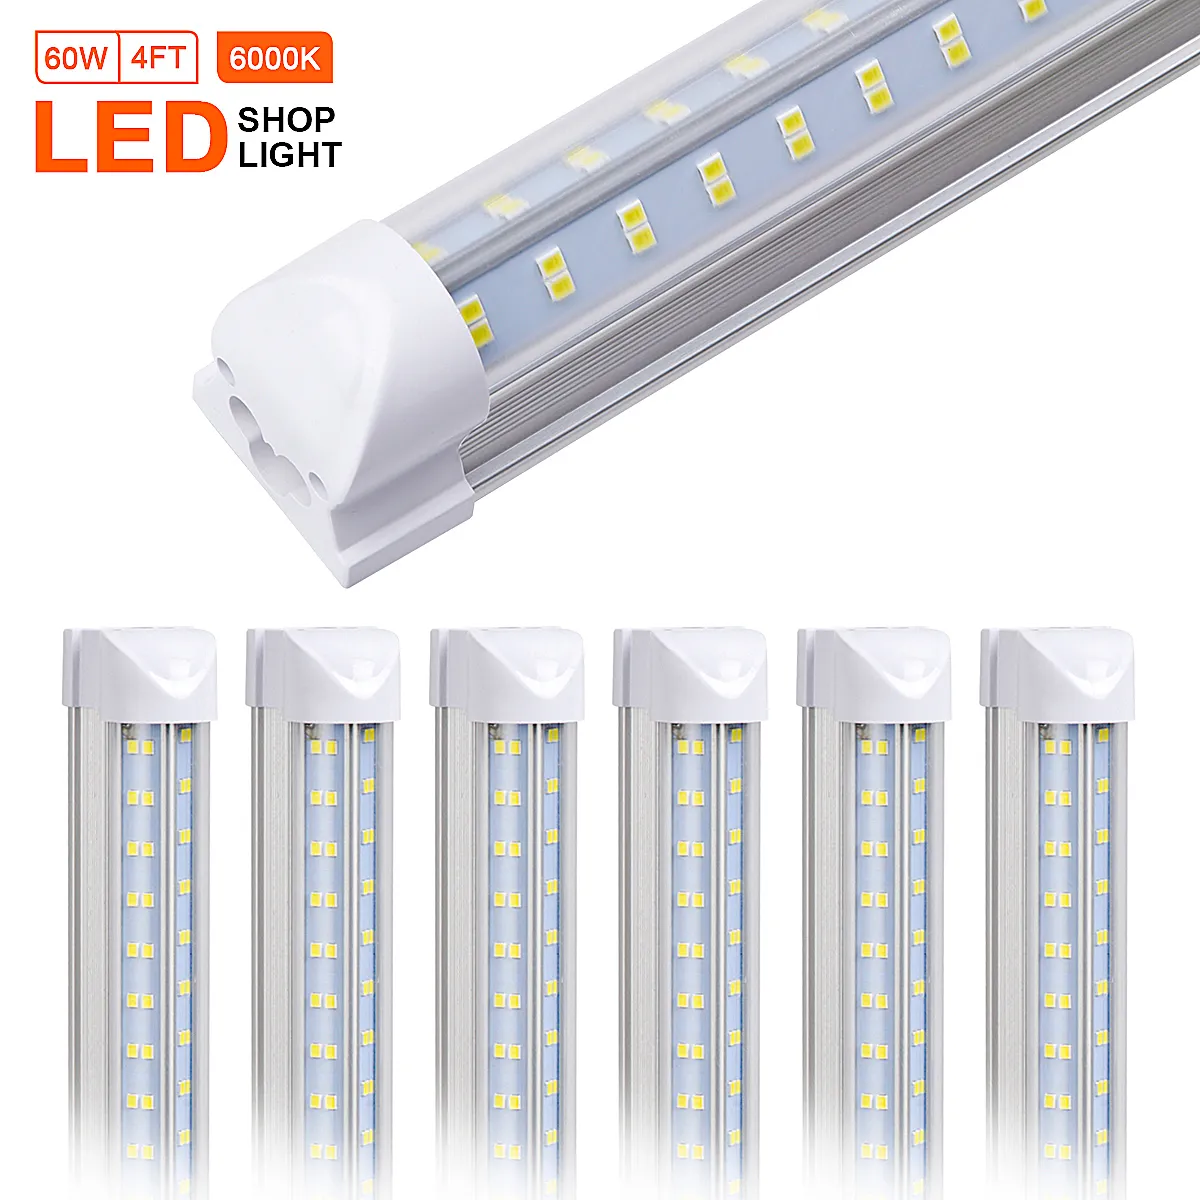 25pcs T8 LED 샵 전등, 4ft 60w, 5000K 일광 흰색, 클리어 렌즈 커버, 양면 4 rows v 모양 통합 전구 램프, led 냉각기 도어 빛